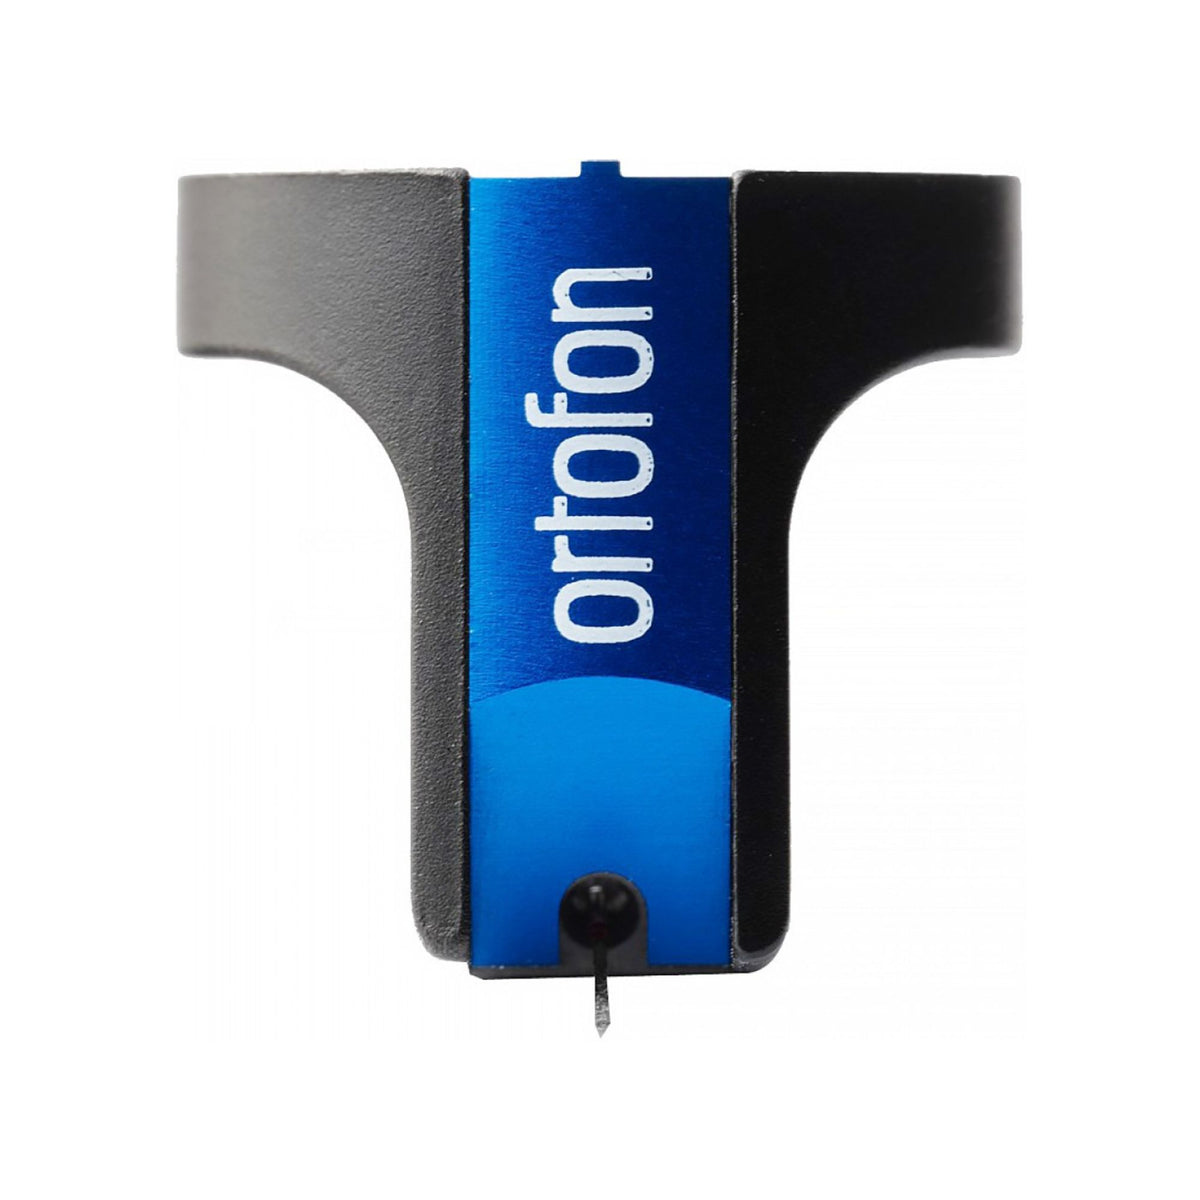 Ortofon MC Cadenza Blue, Ortofon, Turntable Accessories - AVStore.in